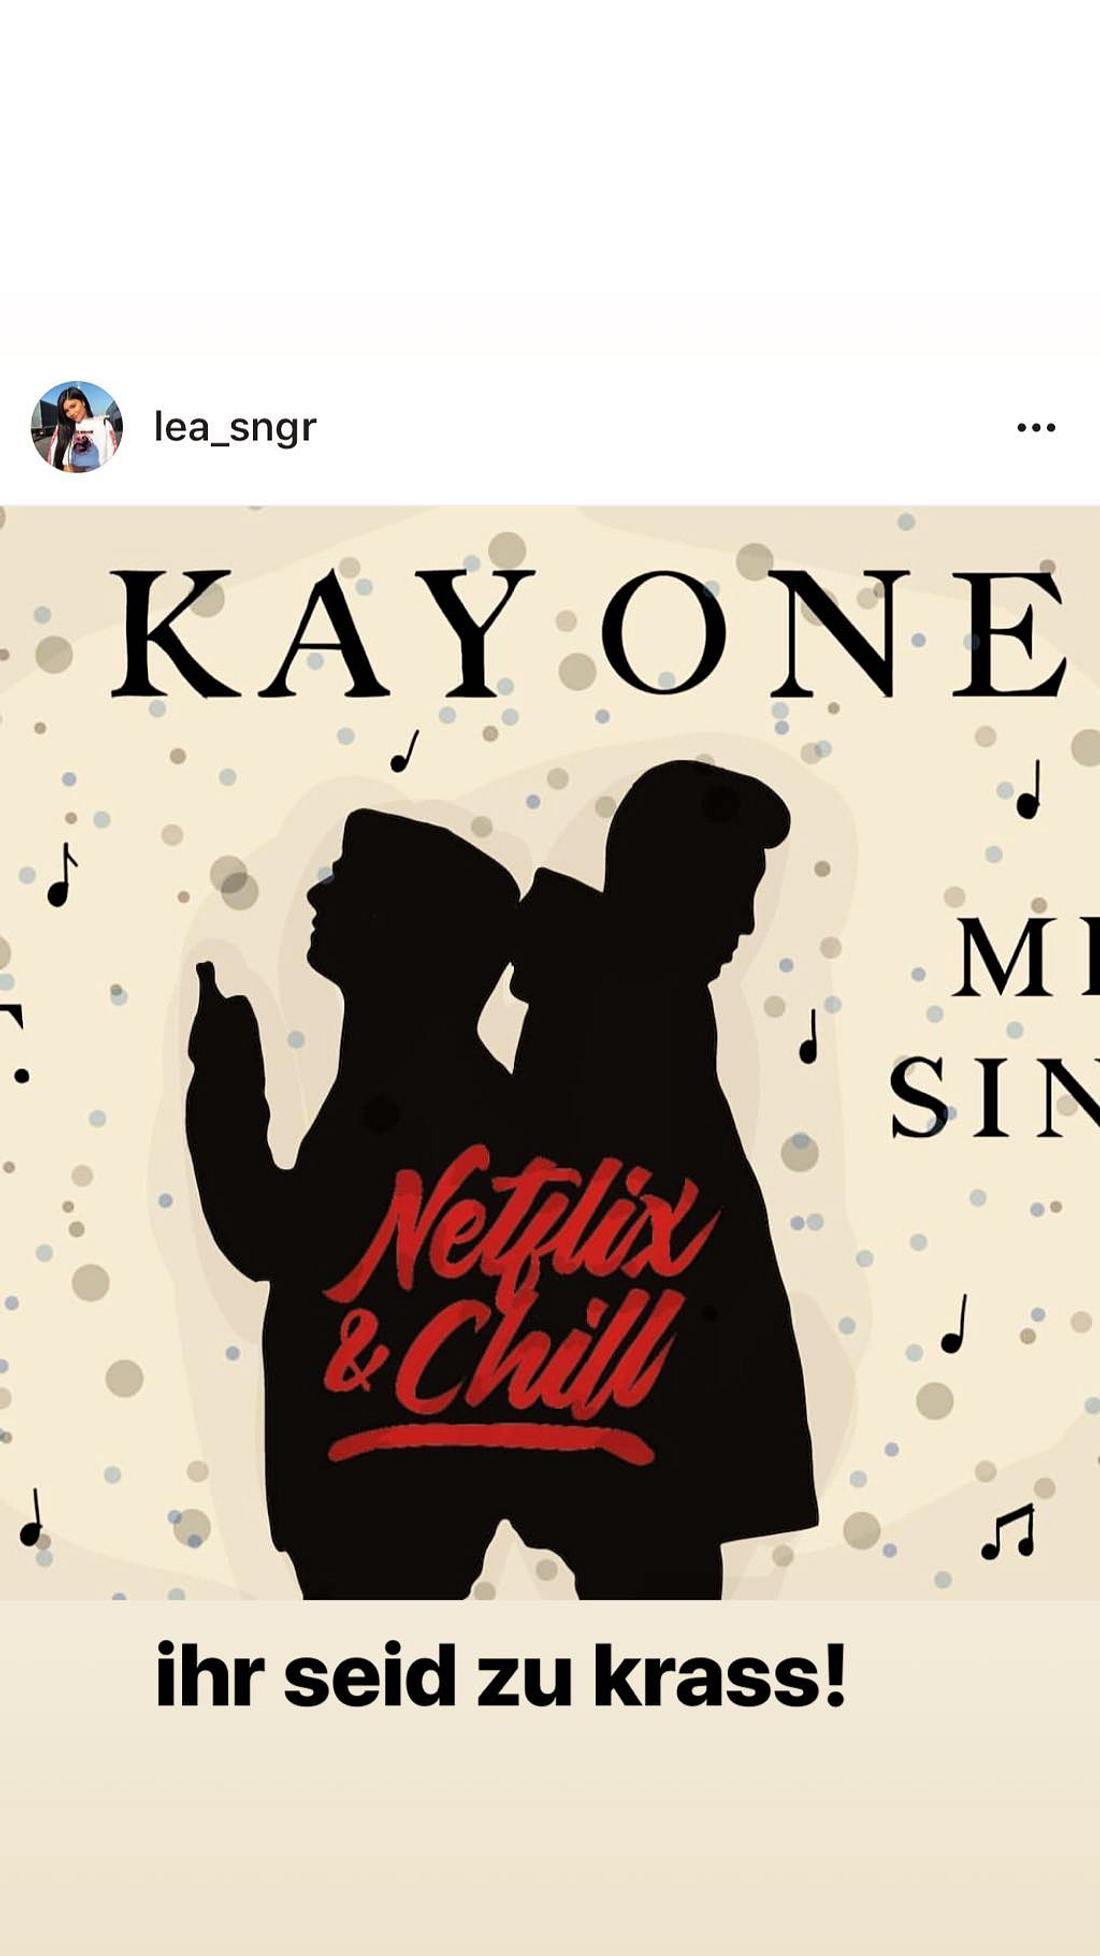 Mike Singer und Kay One: Wird so das Cover von Netflix & Chill aussehen?